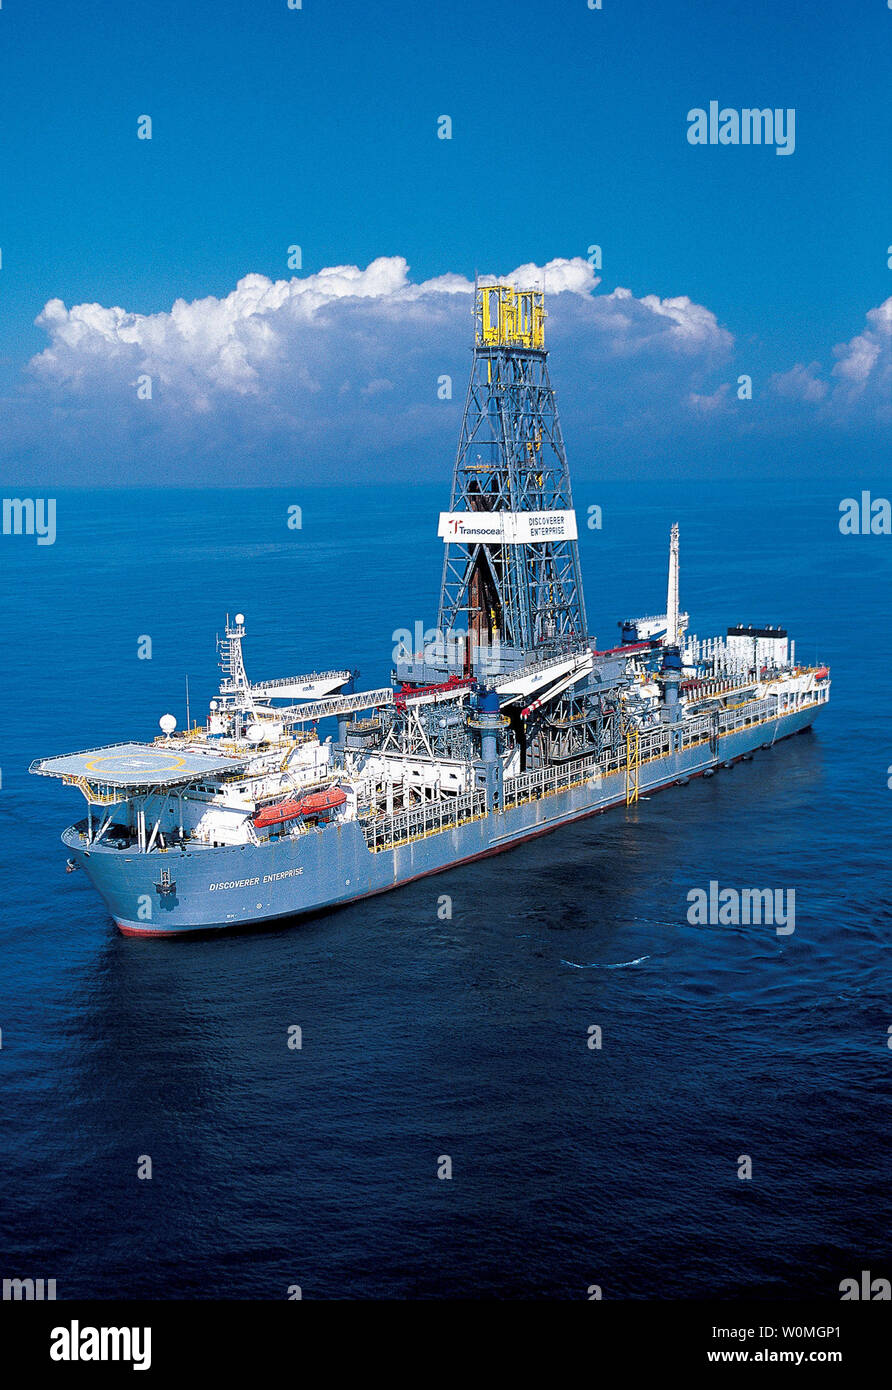 Le navire de Transocean, Discoverer Enterprise, se prépare à mener une opération de récupération pour BP à l'aide d'un 'dspécialement construite quelques" à la mer le 3 mai 2010. Avec l'utilisation de la coupole et du système de connexion pour le débit de fuite d'huile sur l'équipage de l'Enterprise Discoverer sera capable de récupérer jusqu'à 125 000 barils de pétrole. UPI/BP Banque D'Images